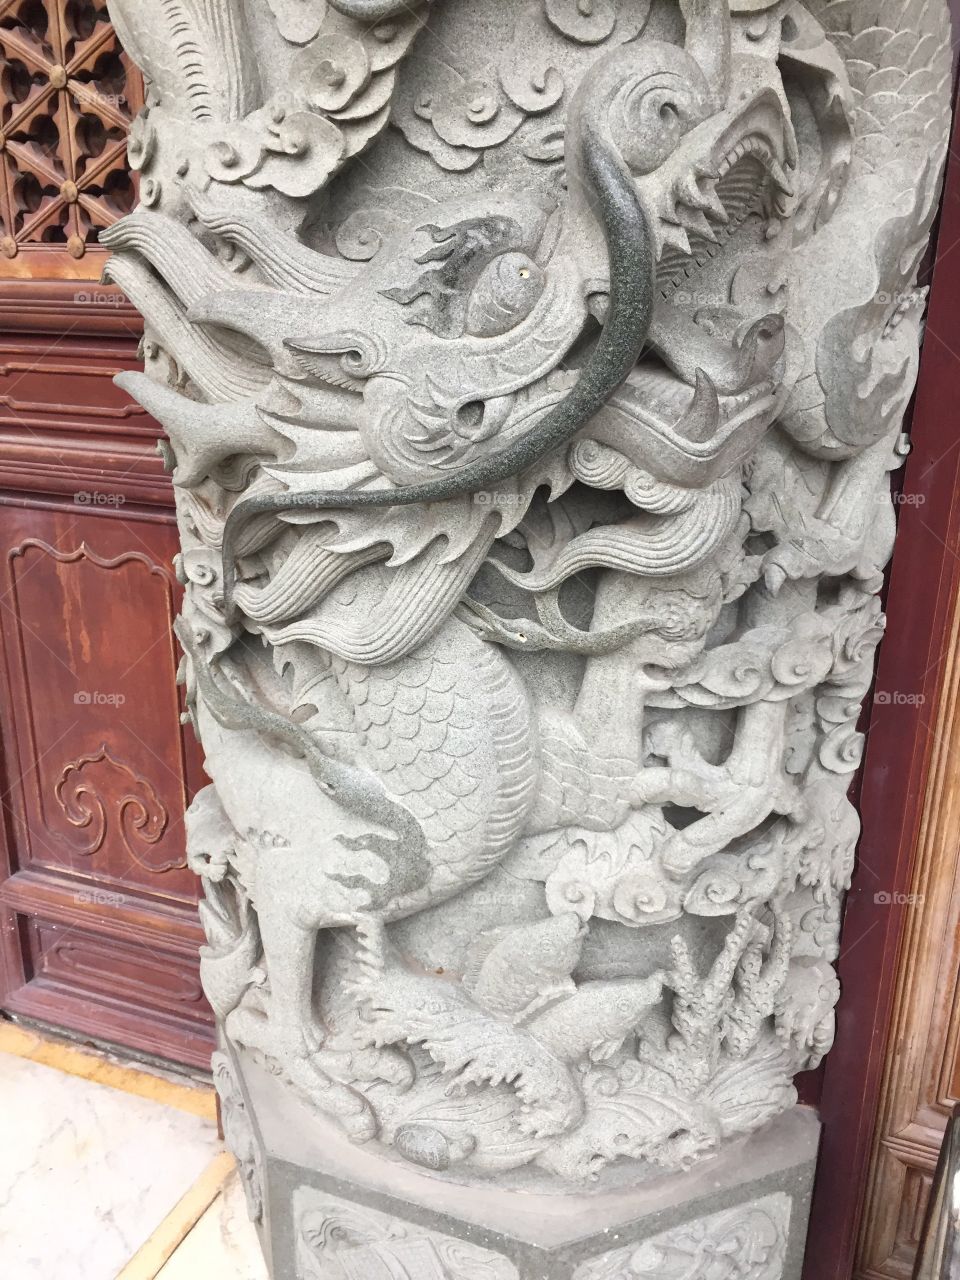 Dragons and Lions at Po Lin Monastery, Ngong Pin Village, Lantau Island, in Hong Kong